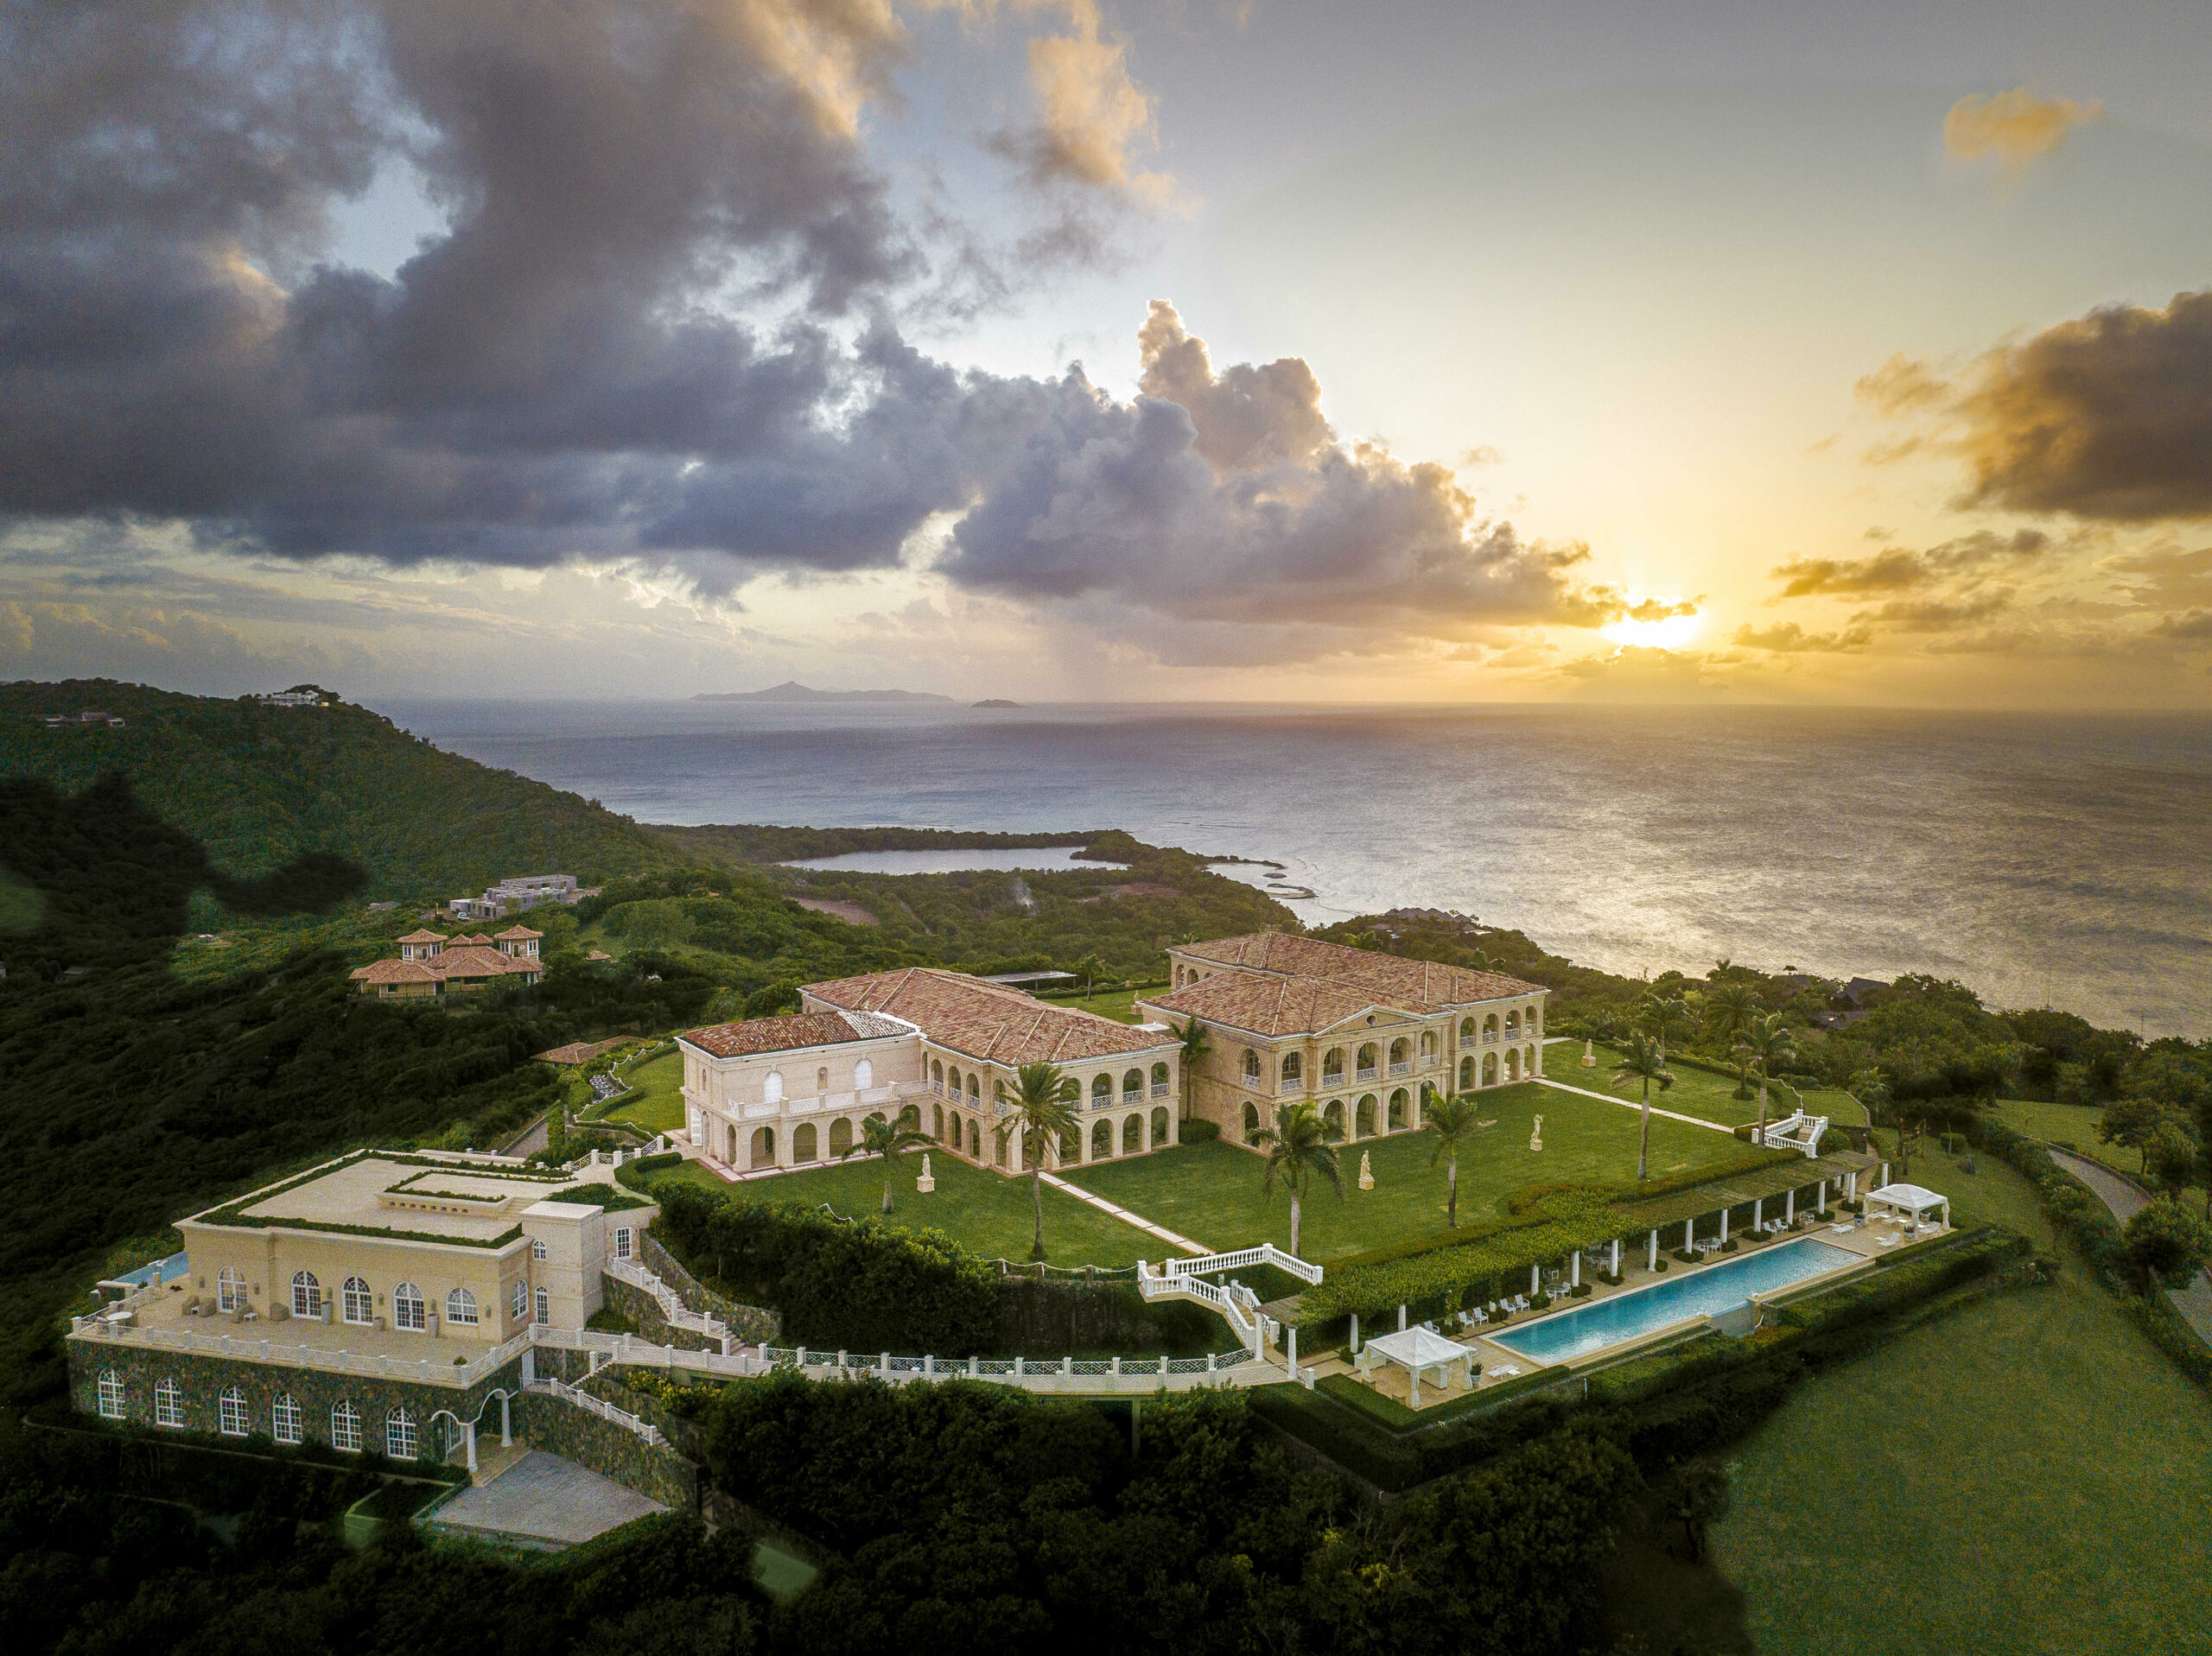 הבית היקר ביותר בקריביים נרשם זה עתה תמורת 200 מיליון דולר - תסתכל פנימה